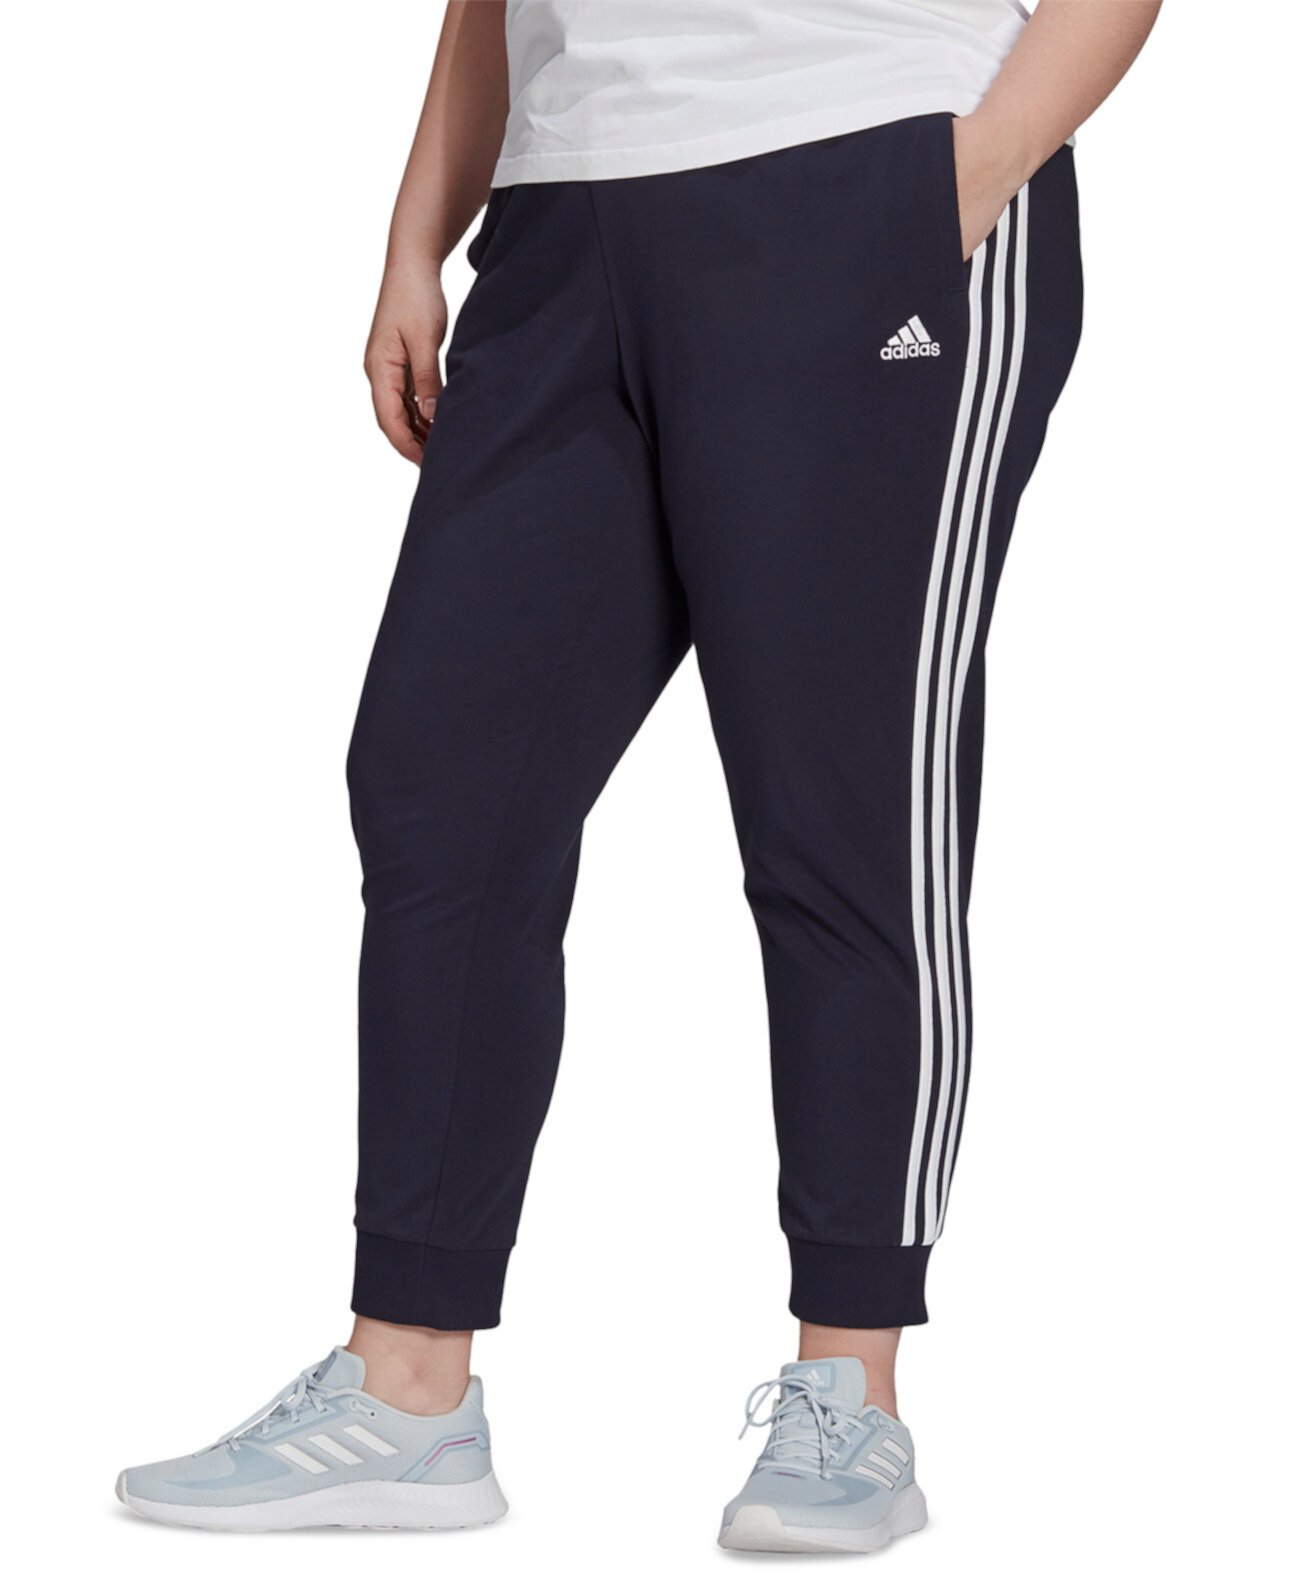 Зауженные брюки Essentials больших размеров с 3 полосками Adidas